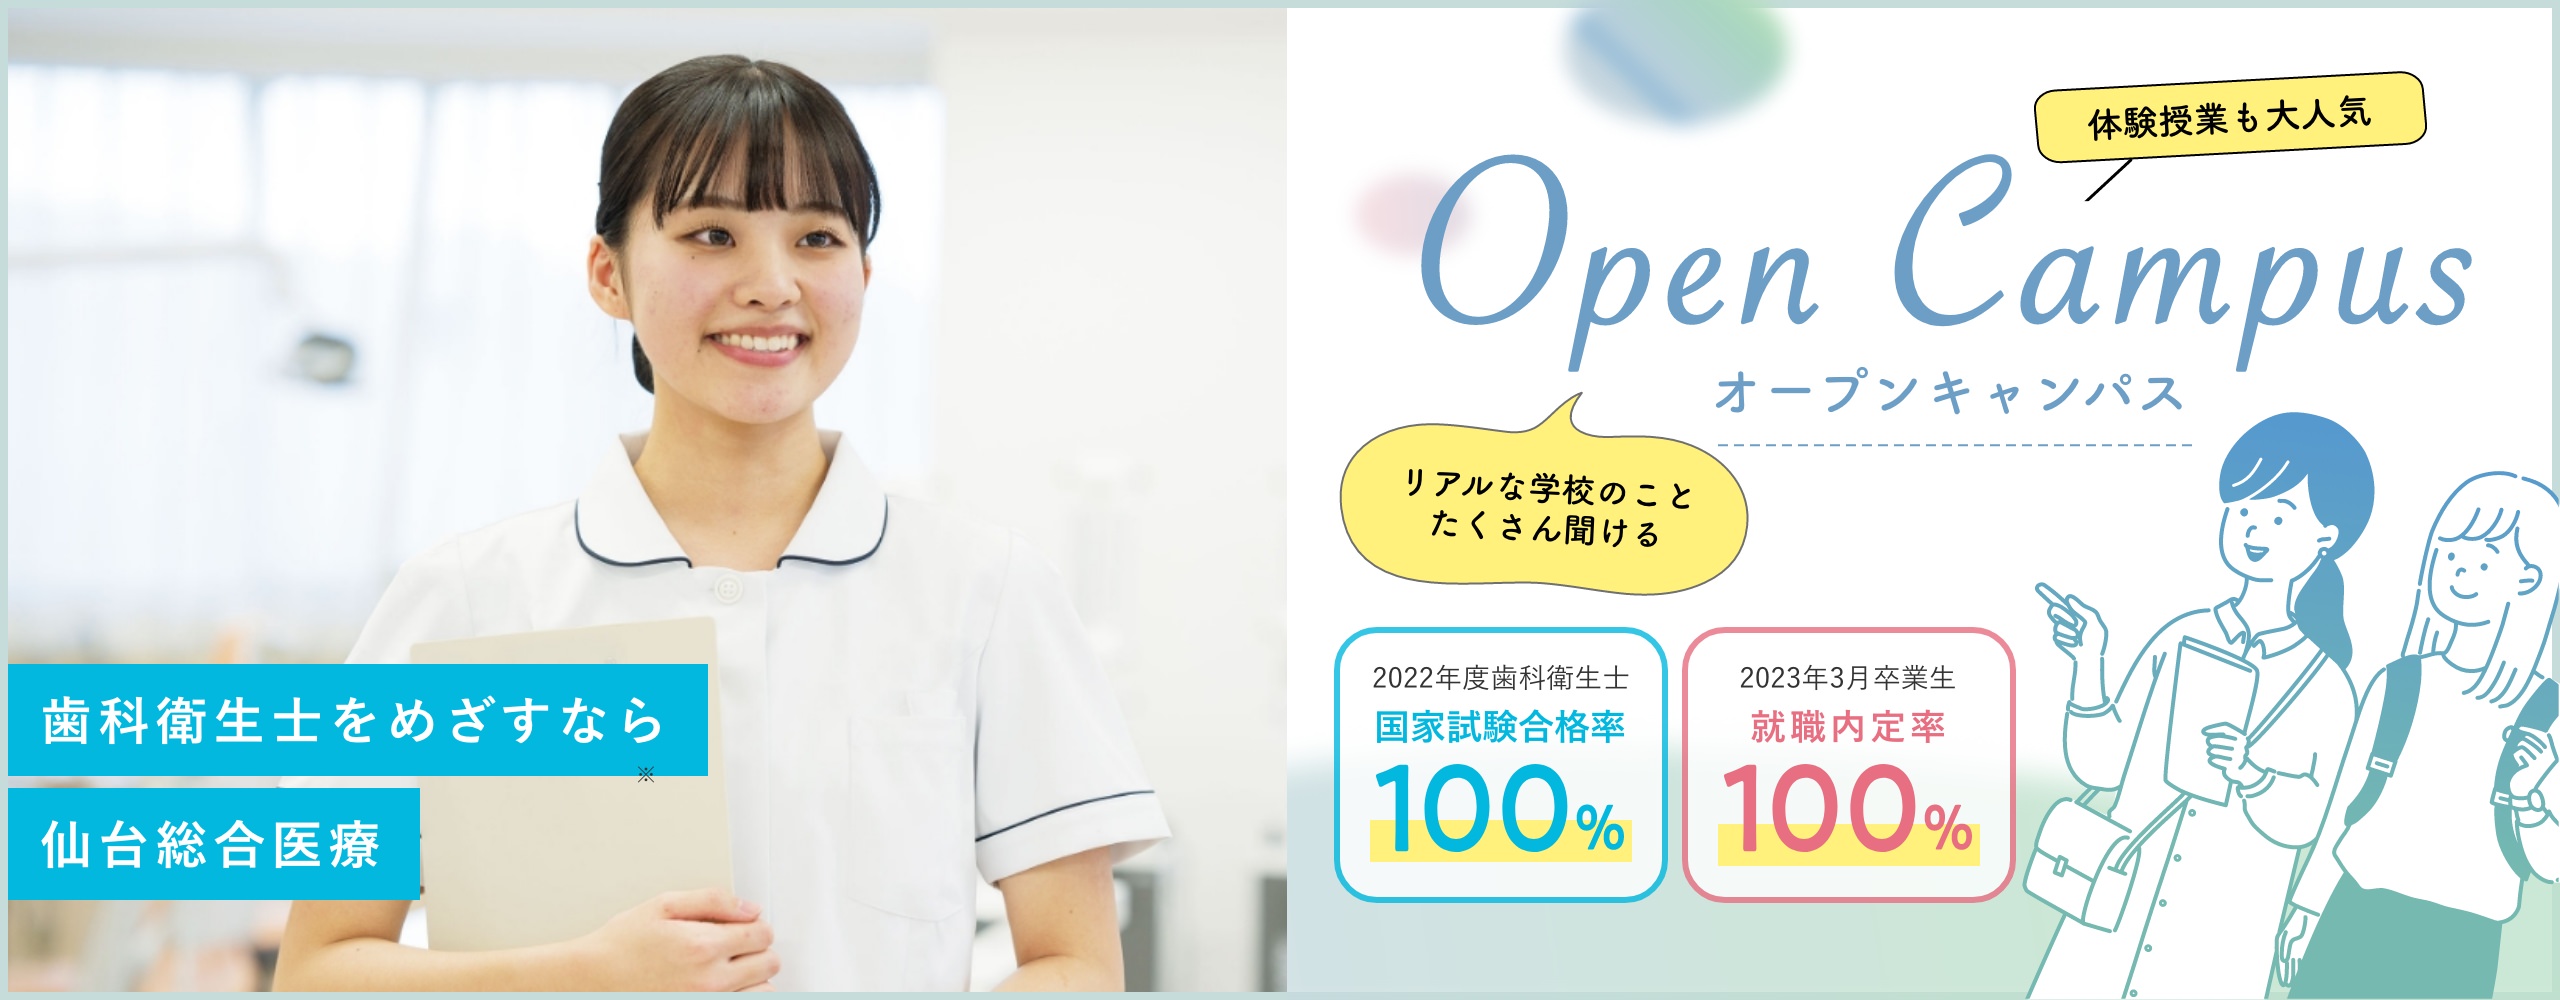 歯科衛生士をめざすなら 仙台保健福祉専門学校のオープンキャンパス